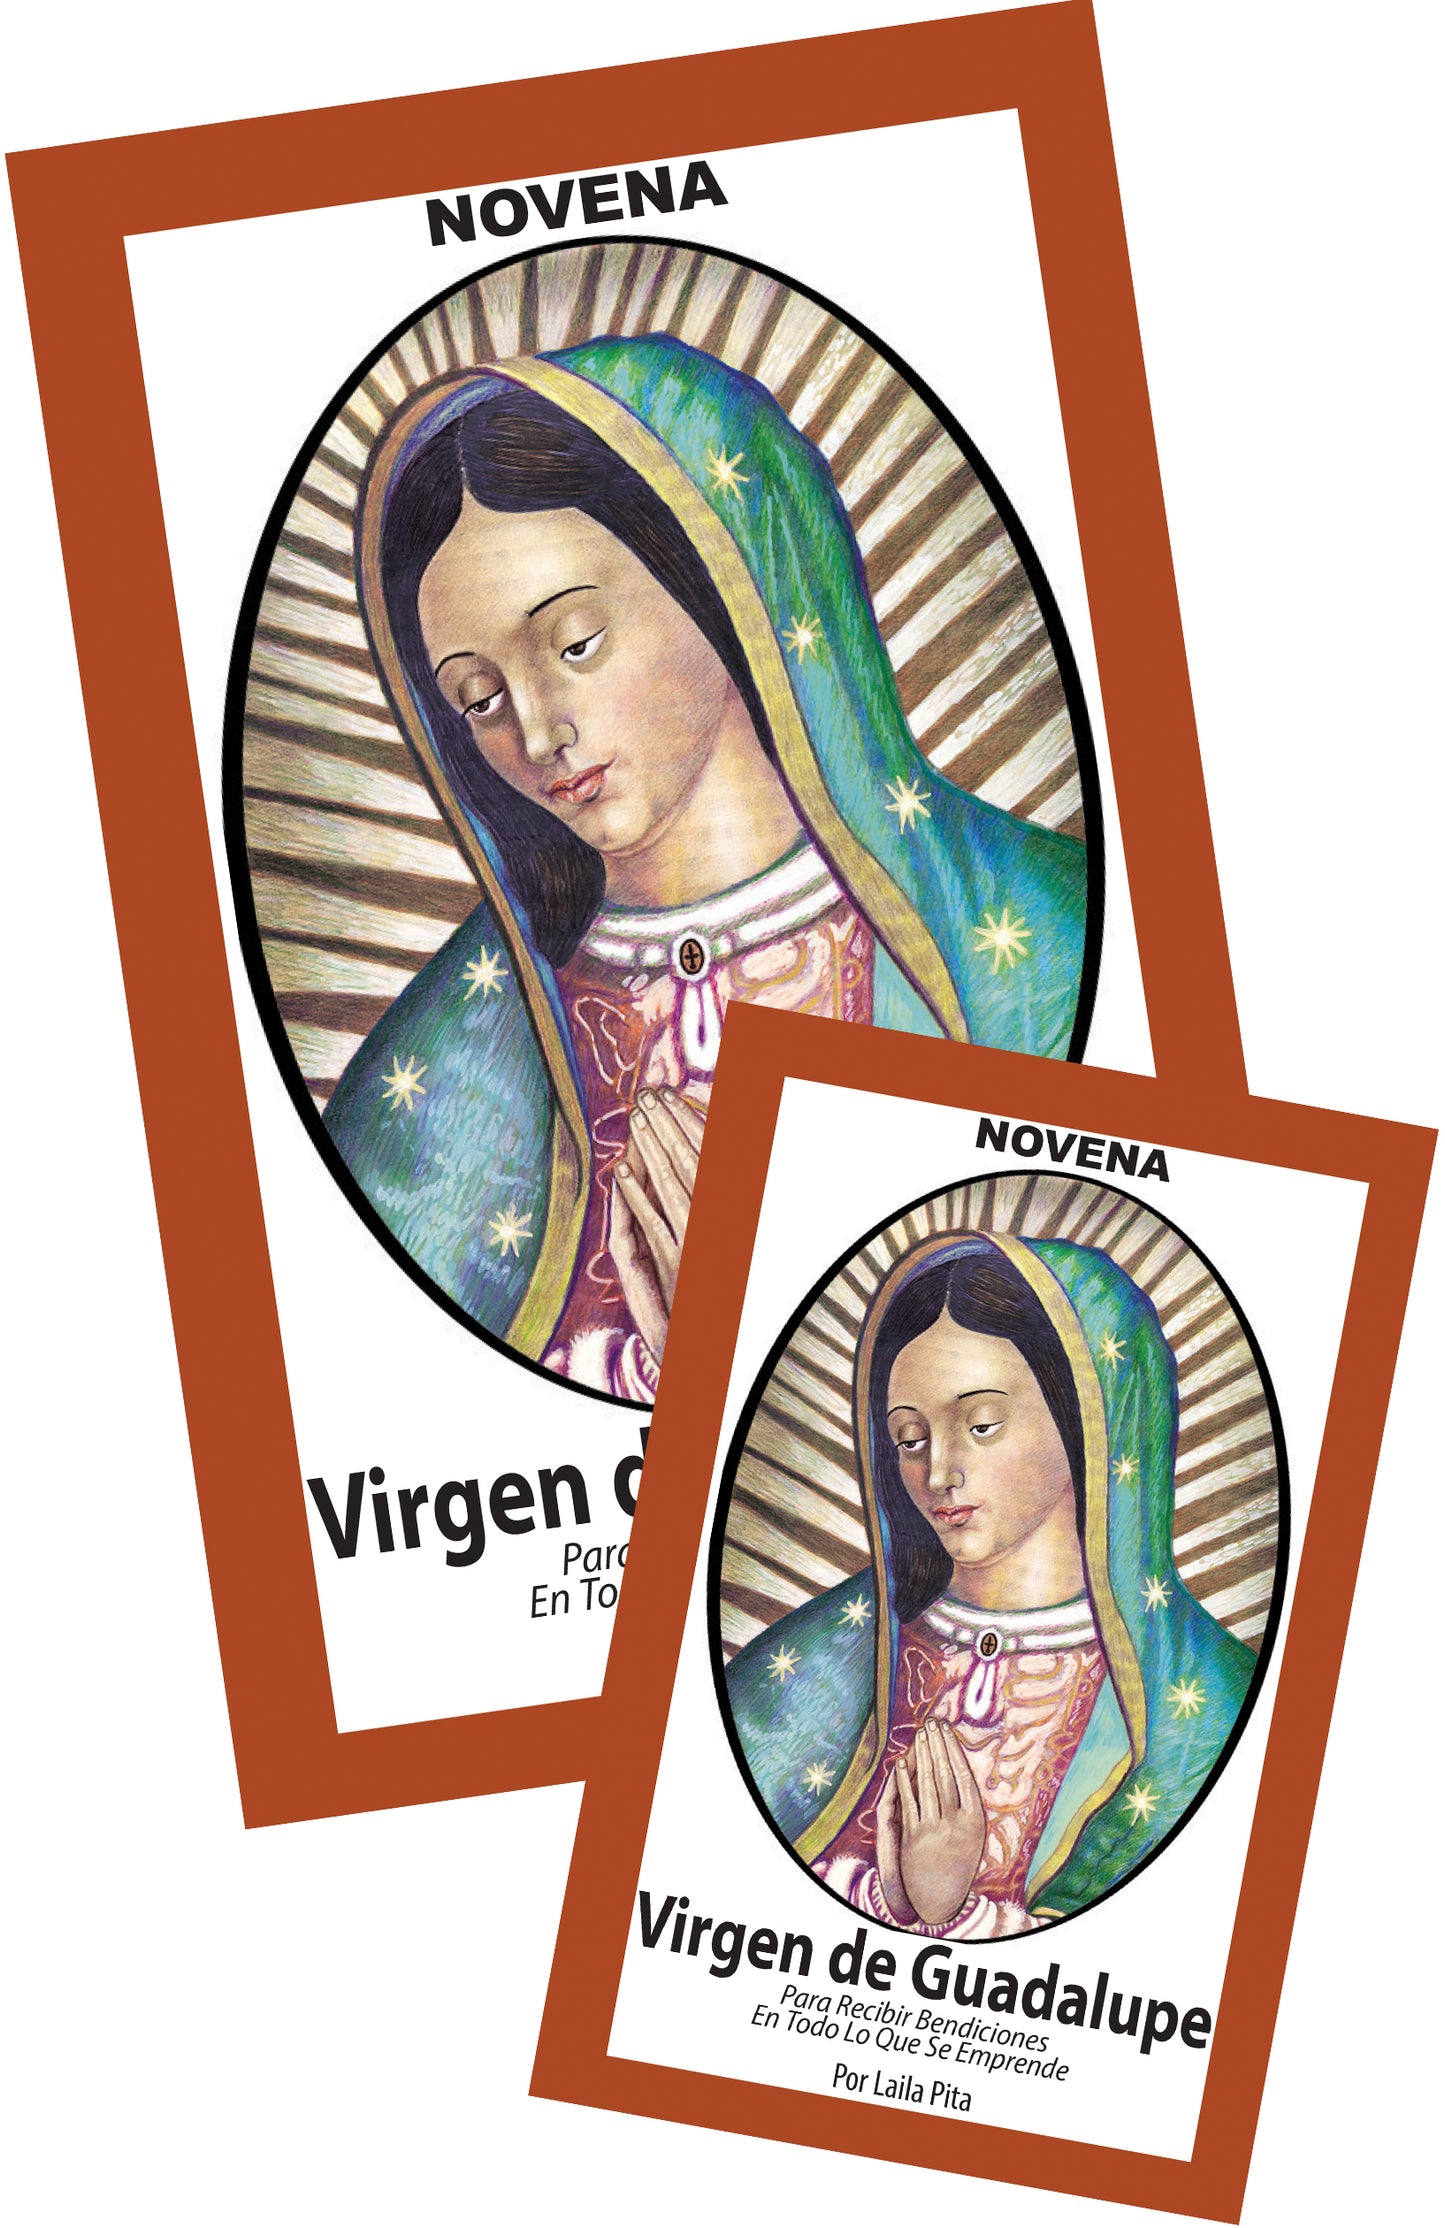 Novena De Virgen De Guadalupe Para Recibir Bendiciones en Todo lo que se Emprende